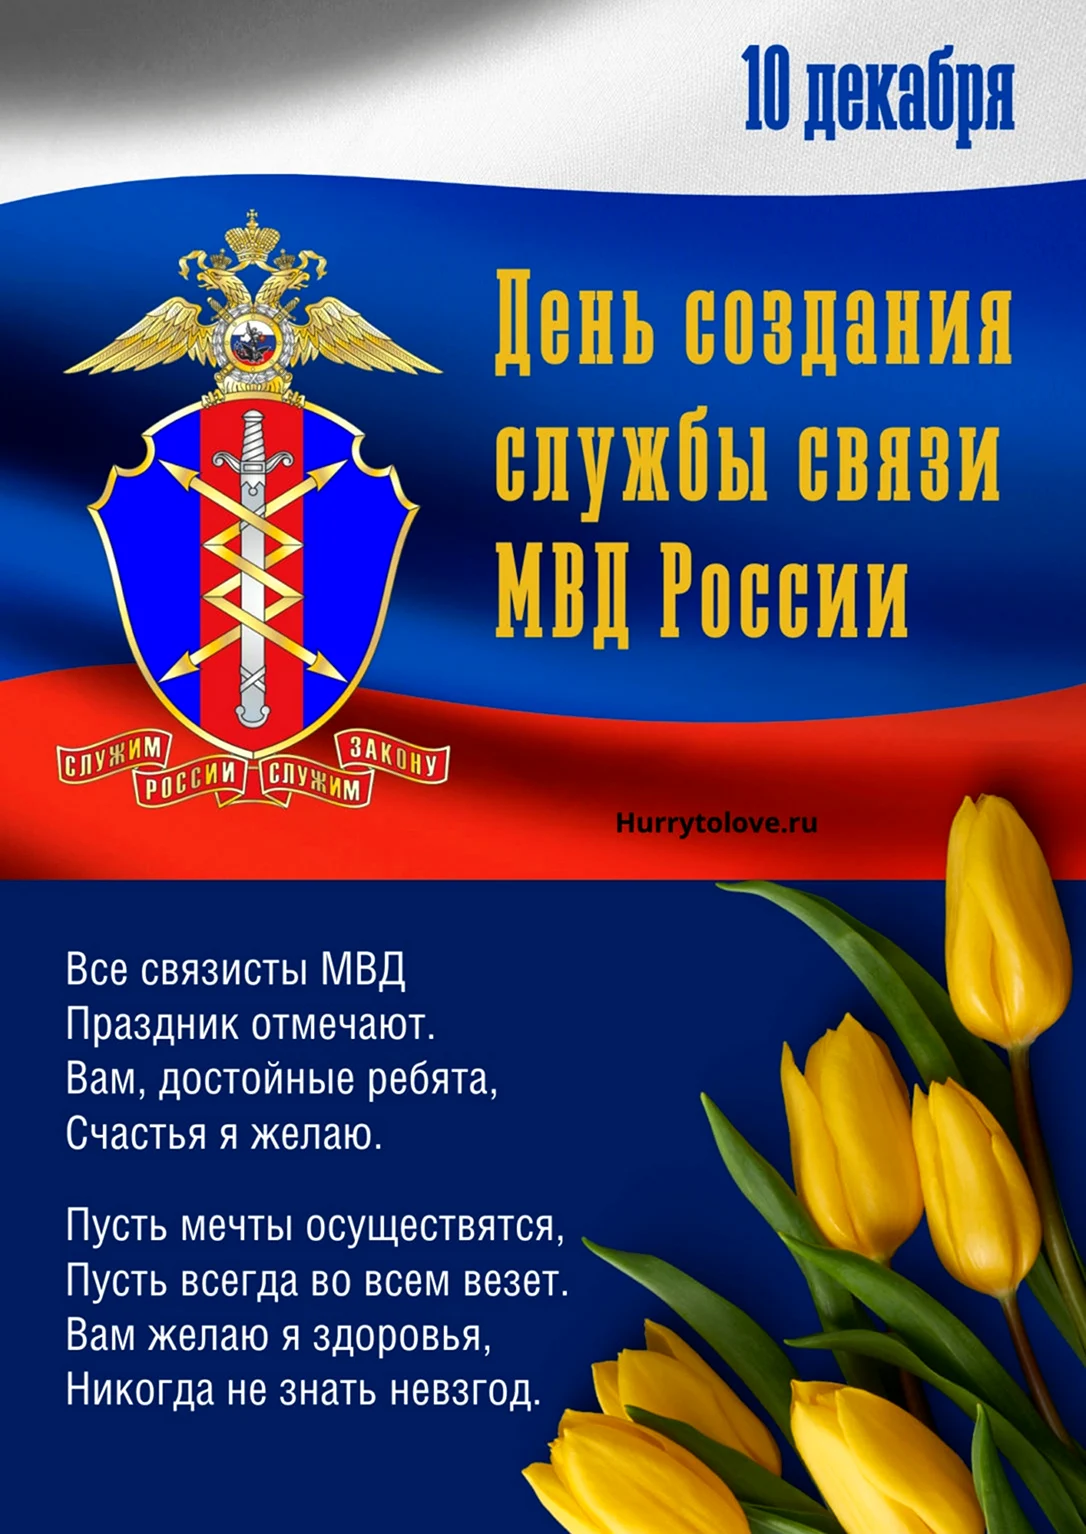 День создания службы связи МВД России. Поздравление